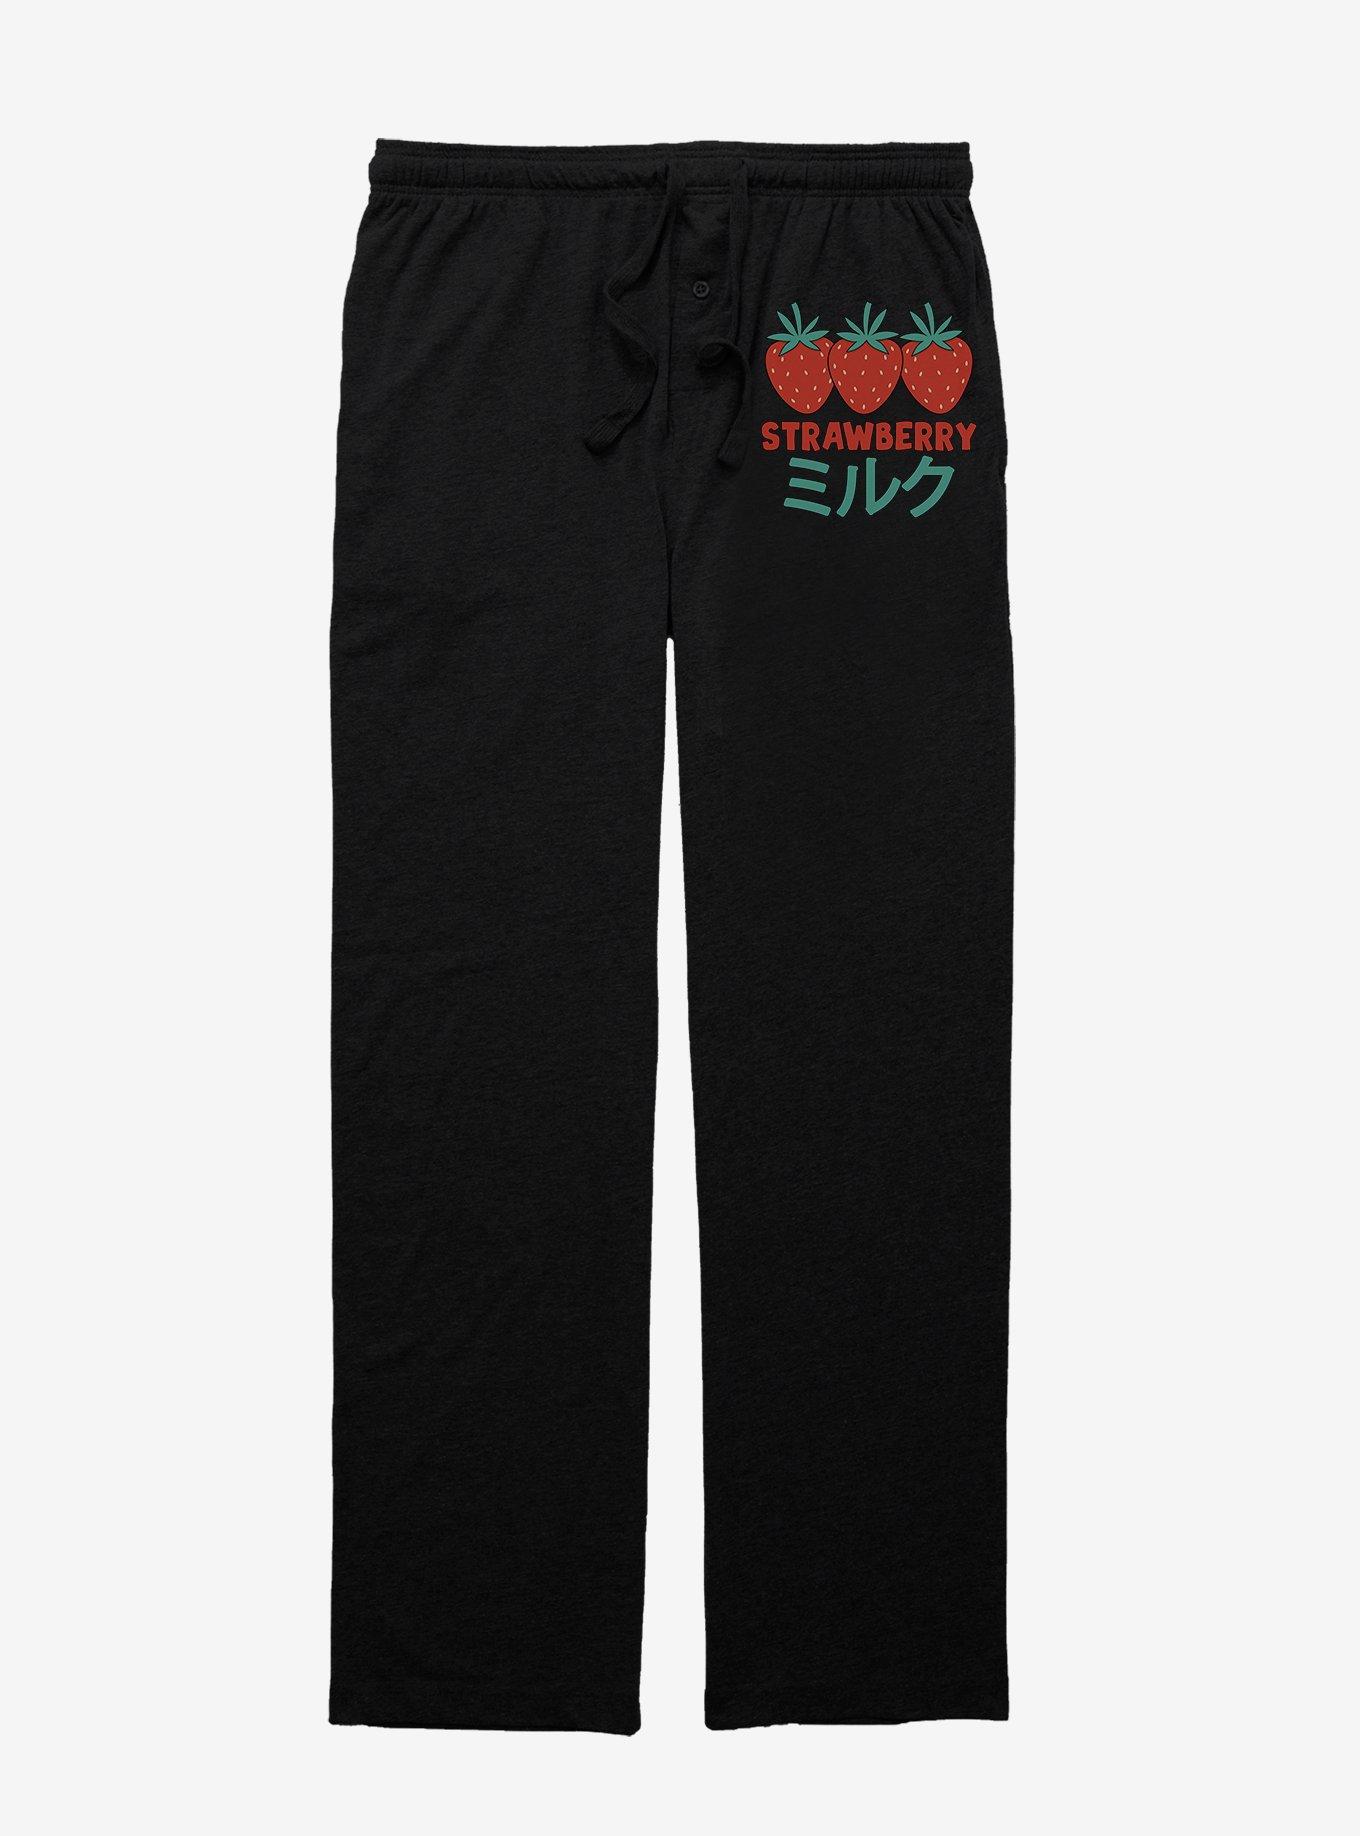 Strawberry Milk Three Berries Pajama Pants, BLACK, hi-res